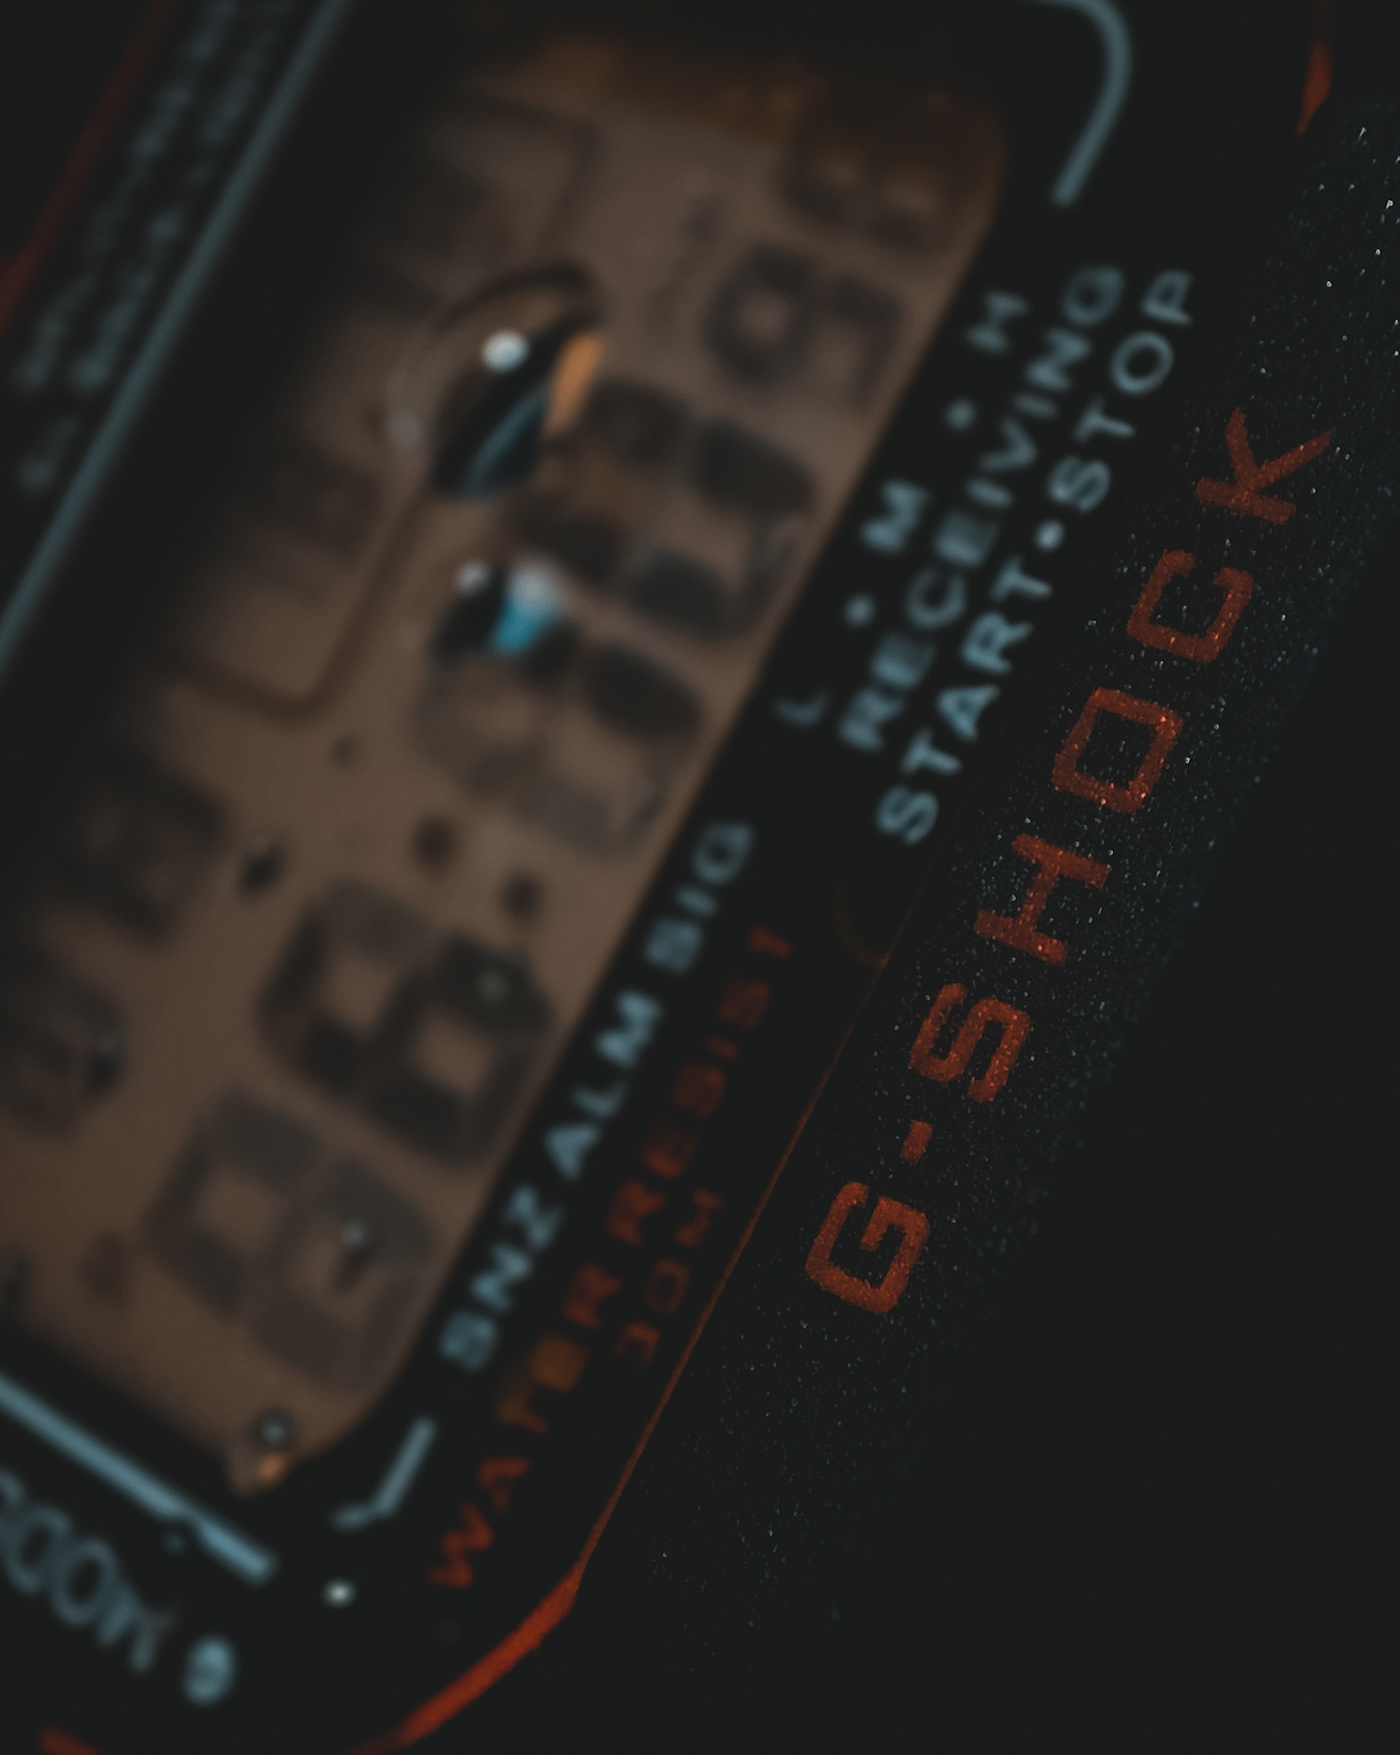 Casio G Shock G-Shock watch